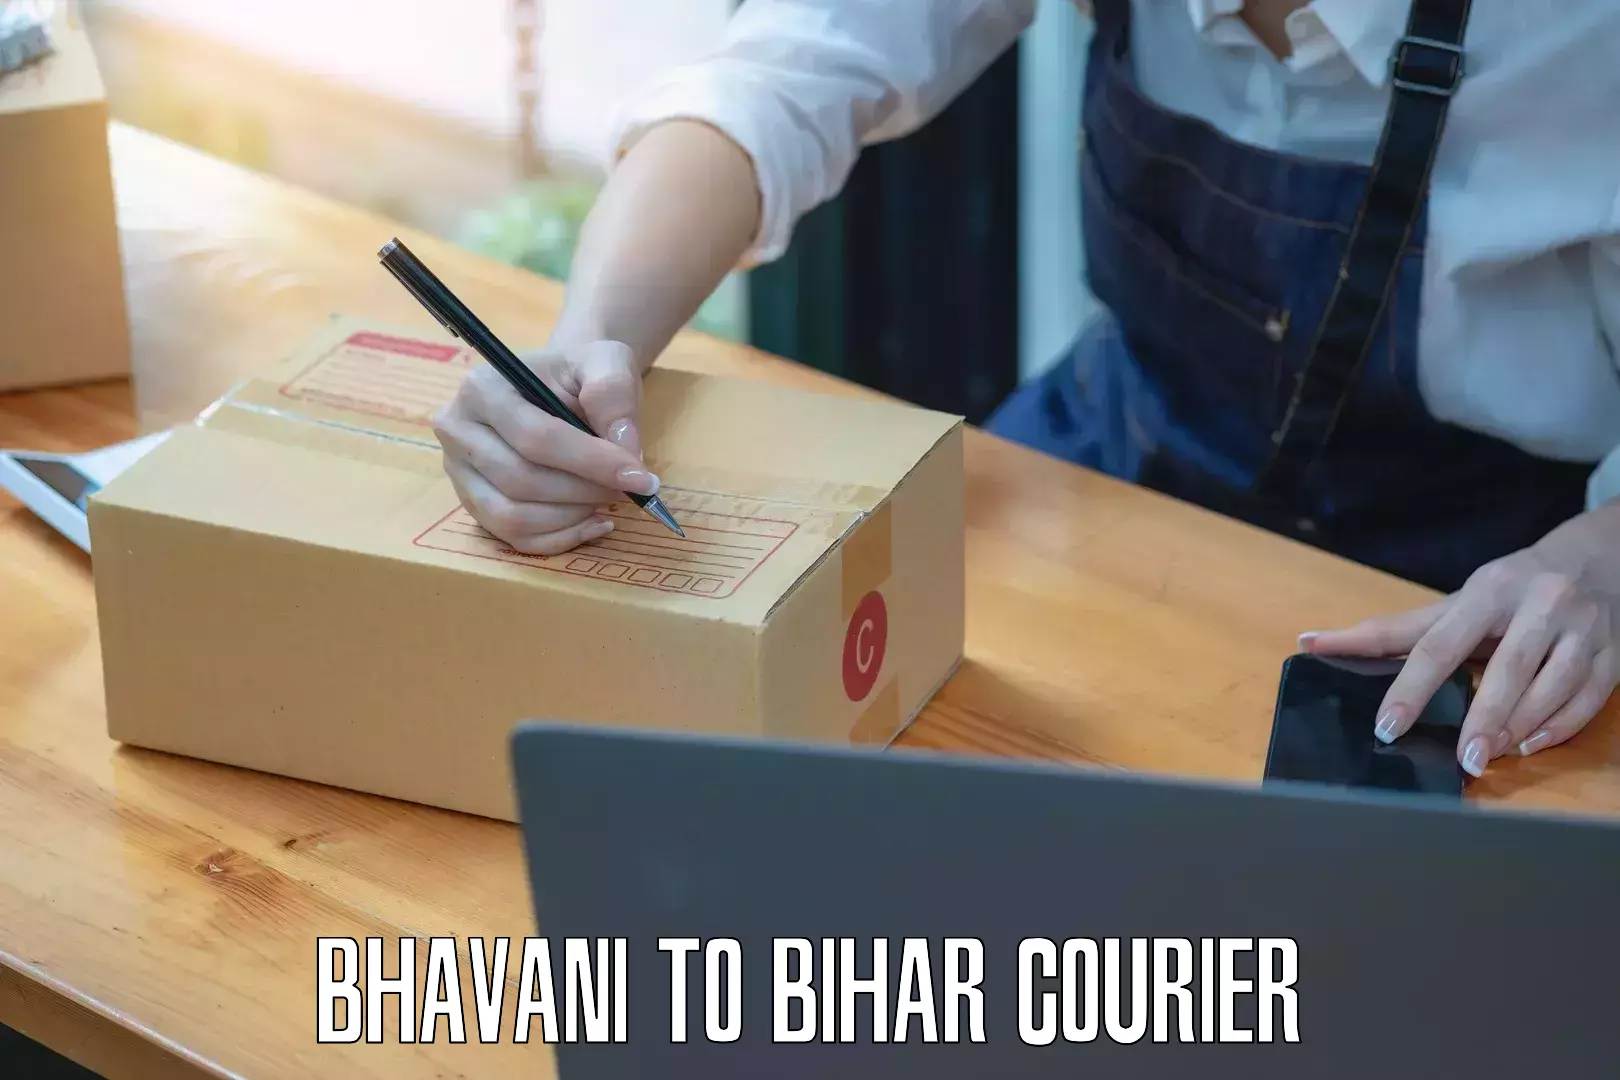 Courier app Bhavani to Bihar